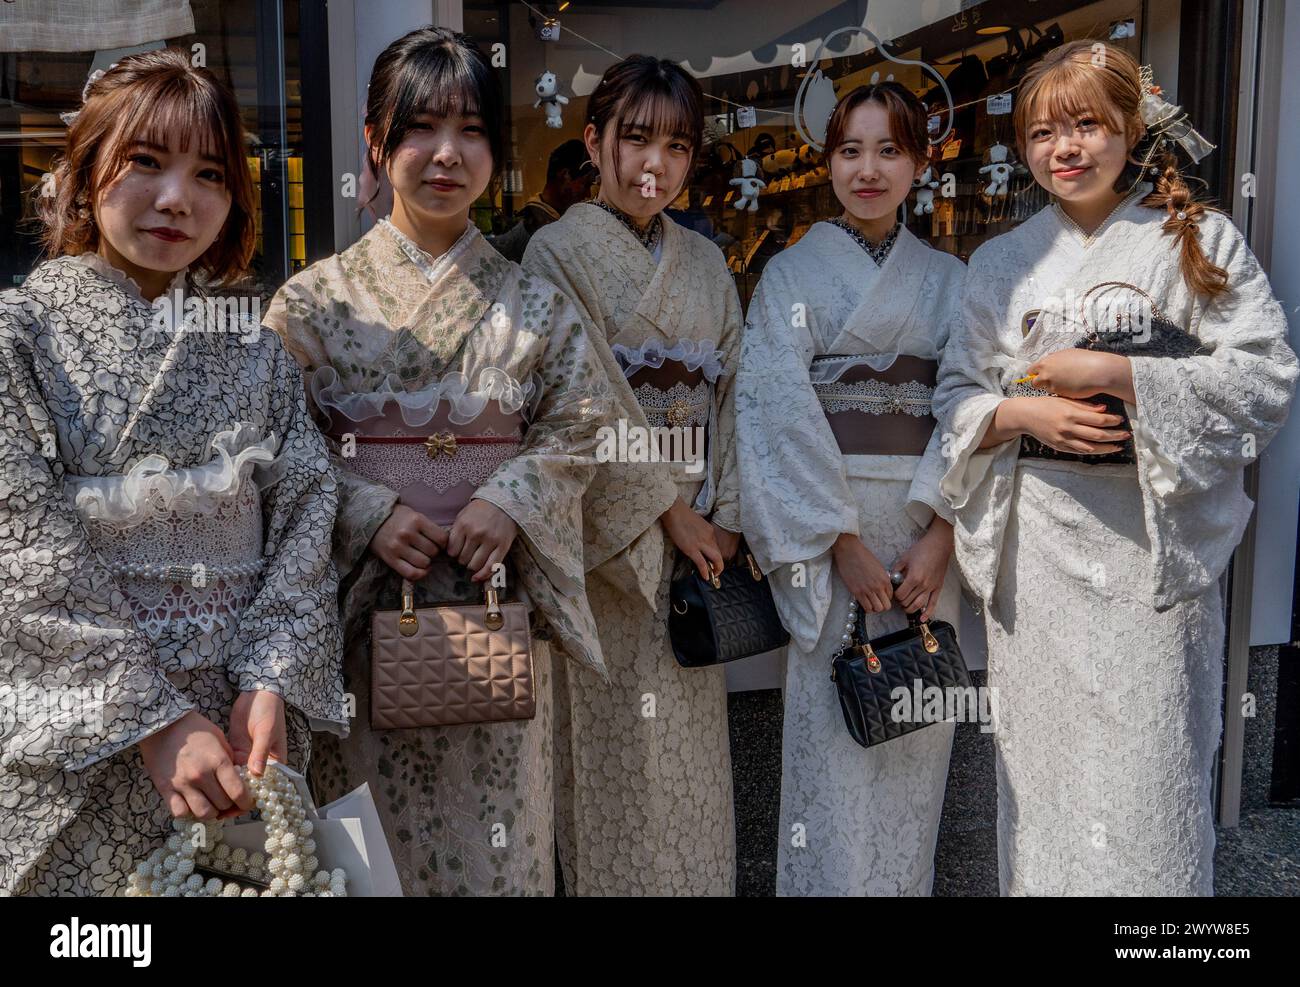 Frauen in traditioneller Kleidung besuchen Tempel und Schreine während der Kirschblüten-Sakura-Saison und Festivals in Kyoto, Japan Stockfoto